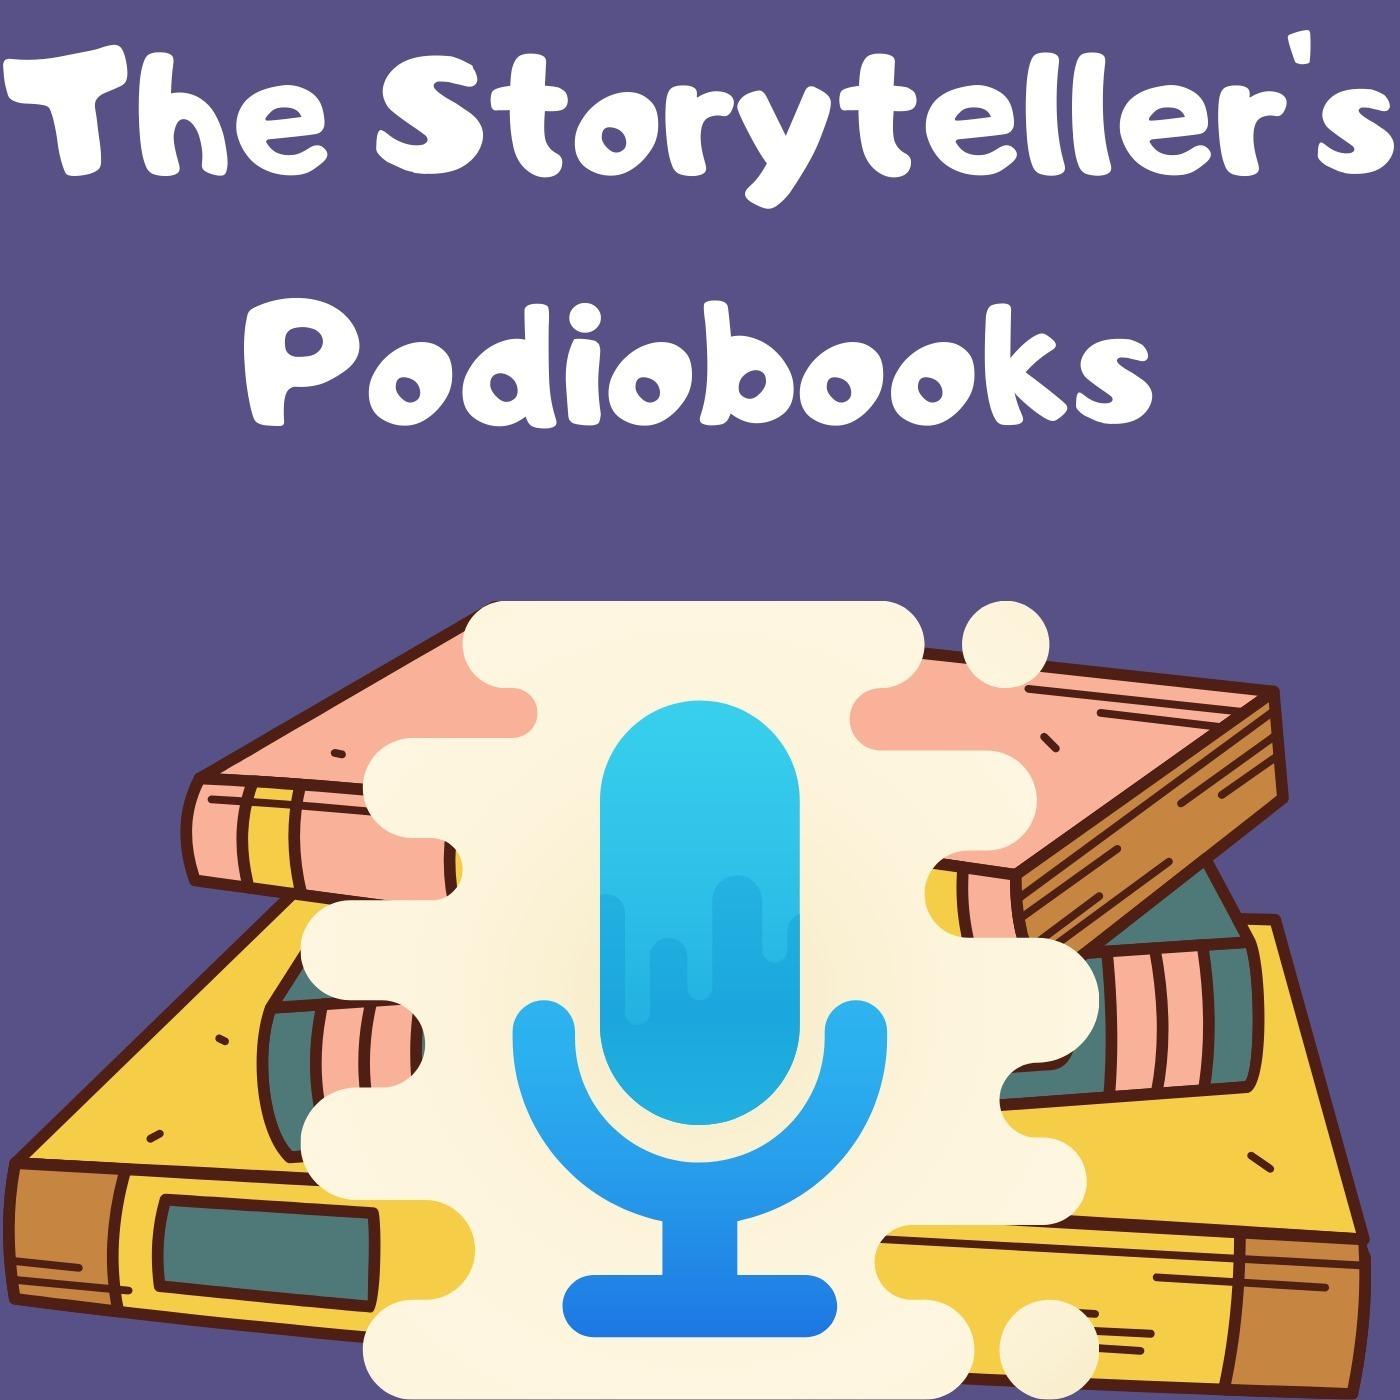 The Storyteller's Podiobooks